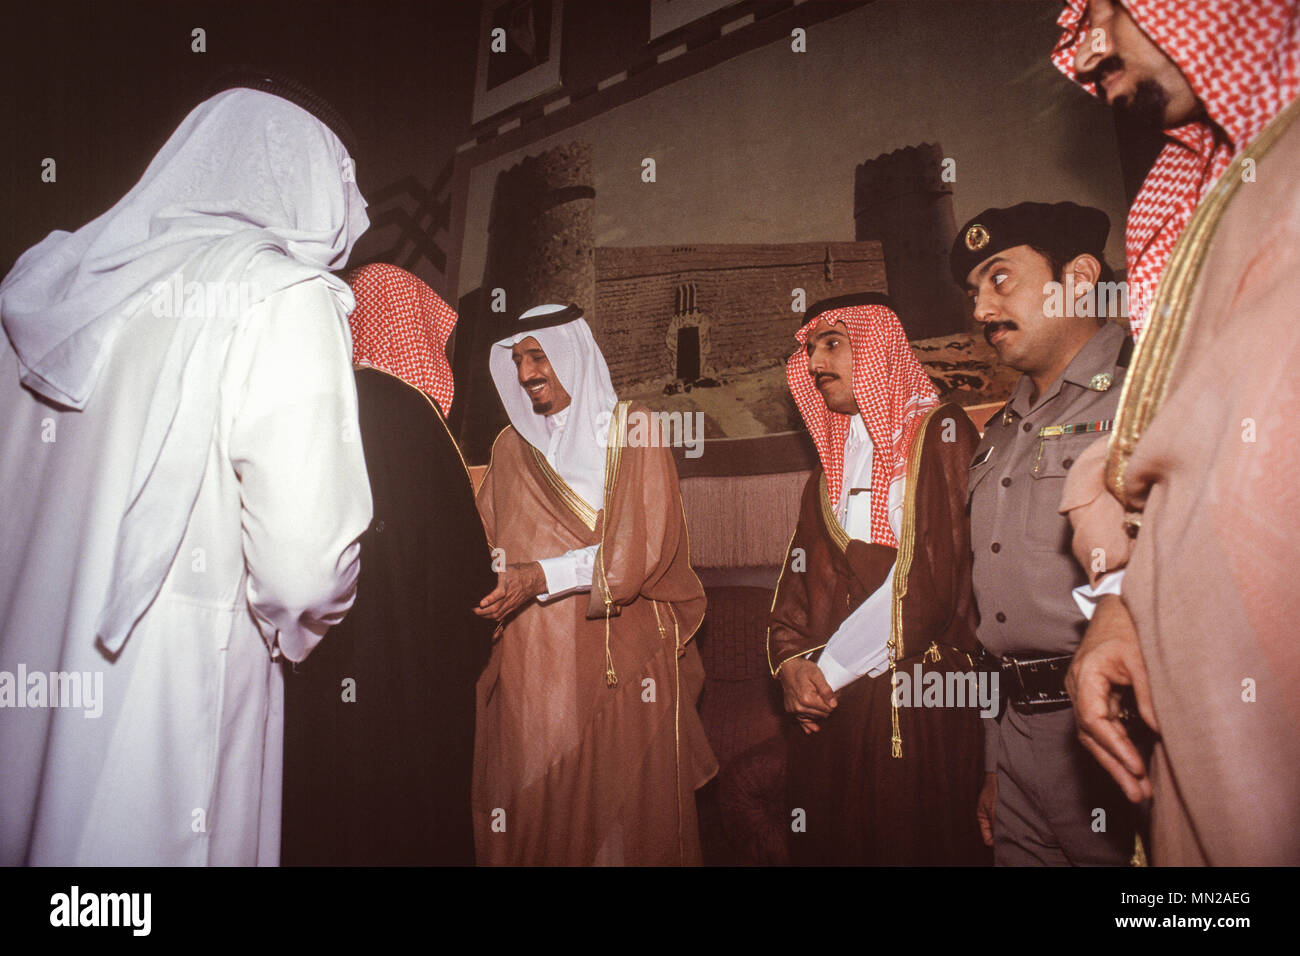 Herrscher des saudiarabischen König Salman, während noch Gouverneur oder Riad Provinz, in seinem Palast in Riad in 1991 Generalaudienz mit saudischer Bürger. Prinz Salman gelang es König Abdullah auf den Thron am 22. Januar 2015. Stockfoto